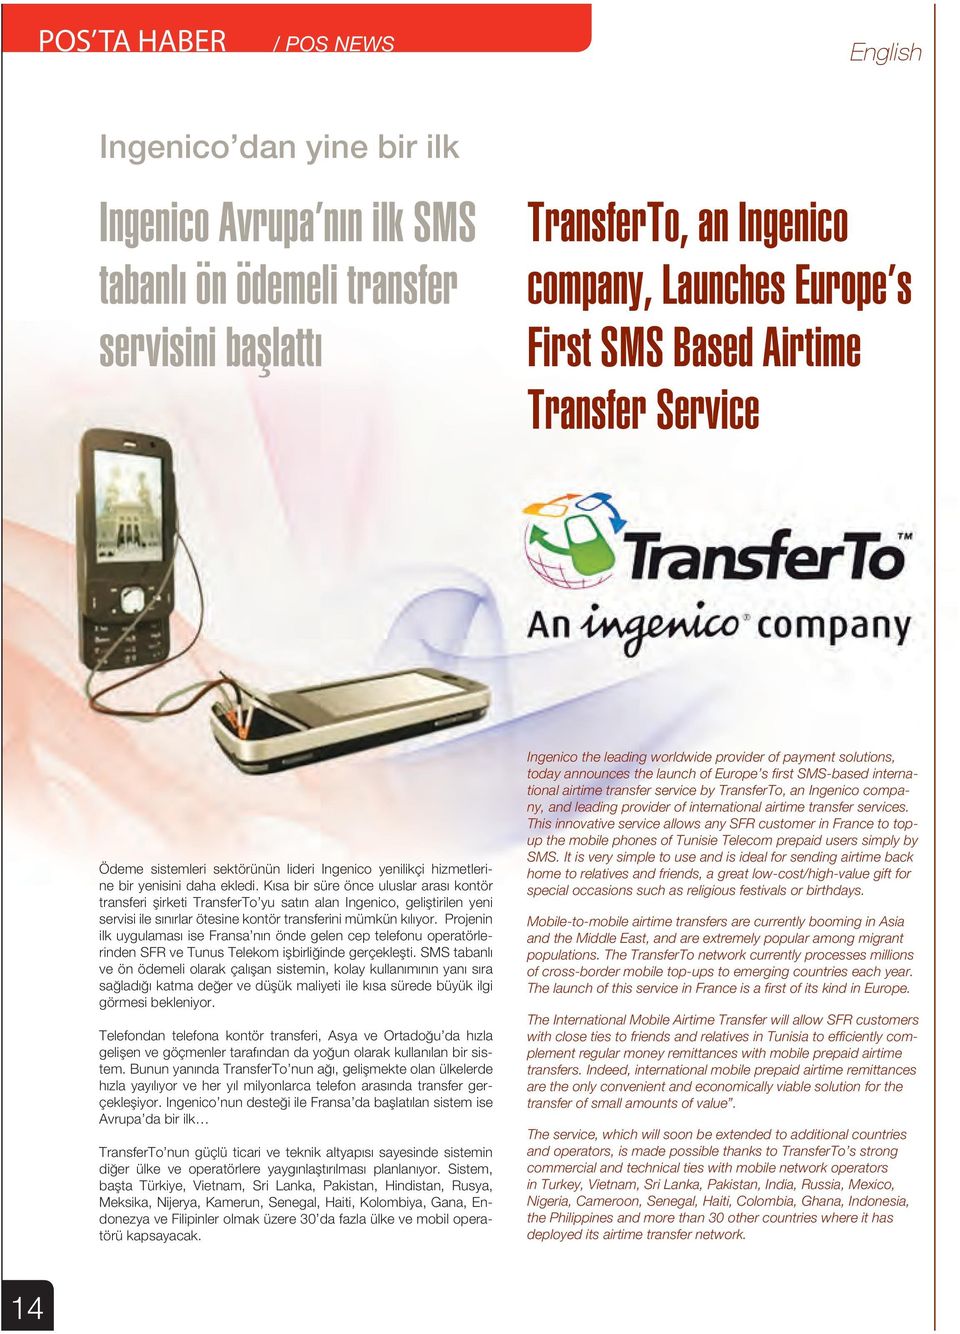 Kısa bir süre önce uluslar arası kontör transferi şirketi TransferTo yu satın alan Ingenico, geliştirilen yeni servisi ile sınırlar ötesine kontör transferini mümkün kılıyor.